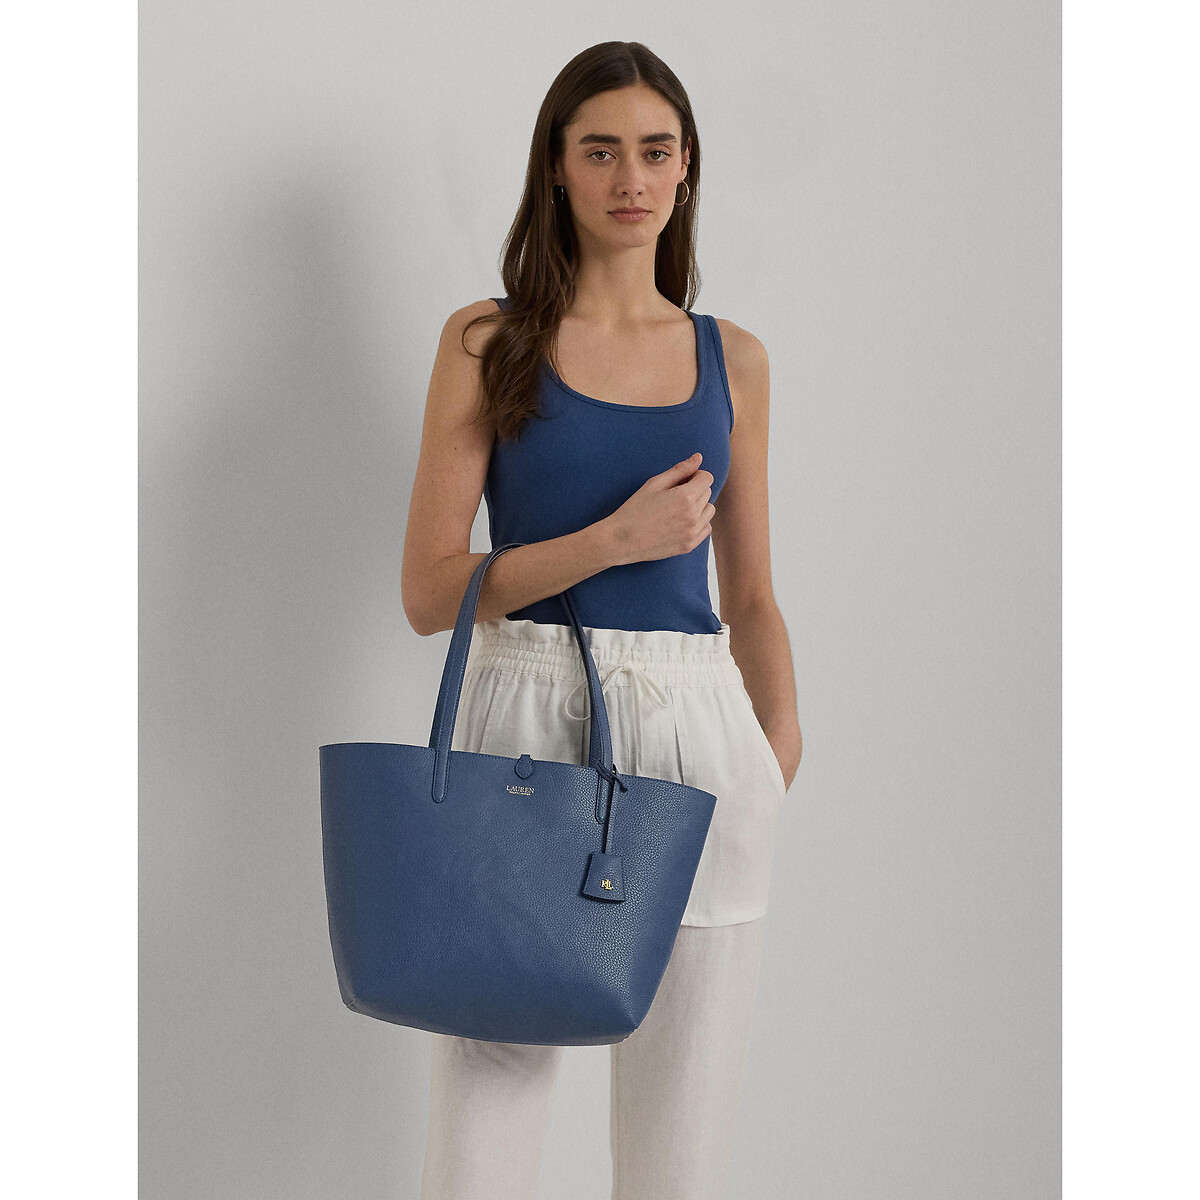 Сумка-шоппер двухсторонняя единый размер синий сумка шоппер s из ткани и блесток единый размер синий